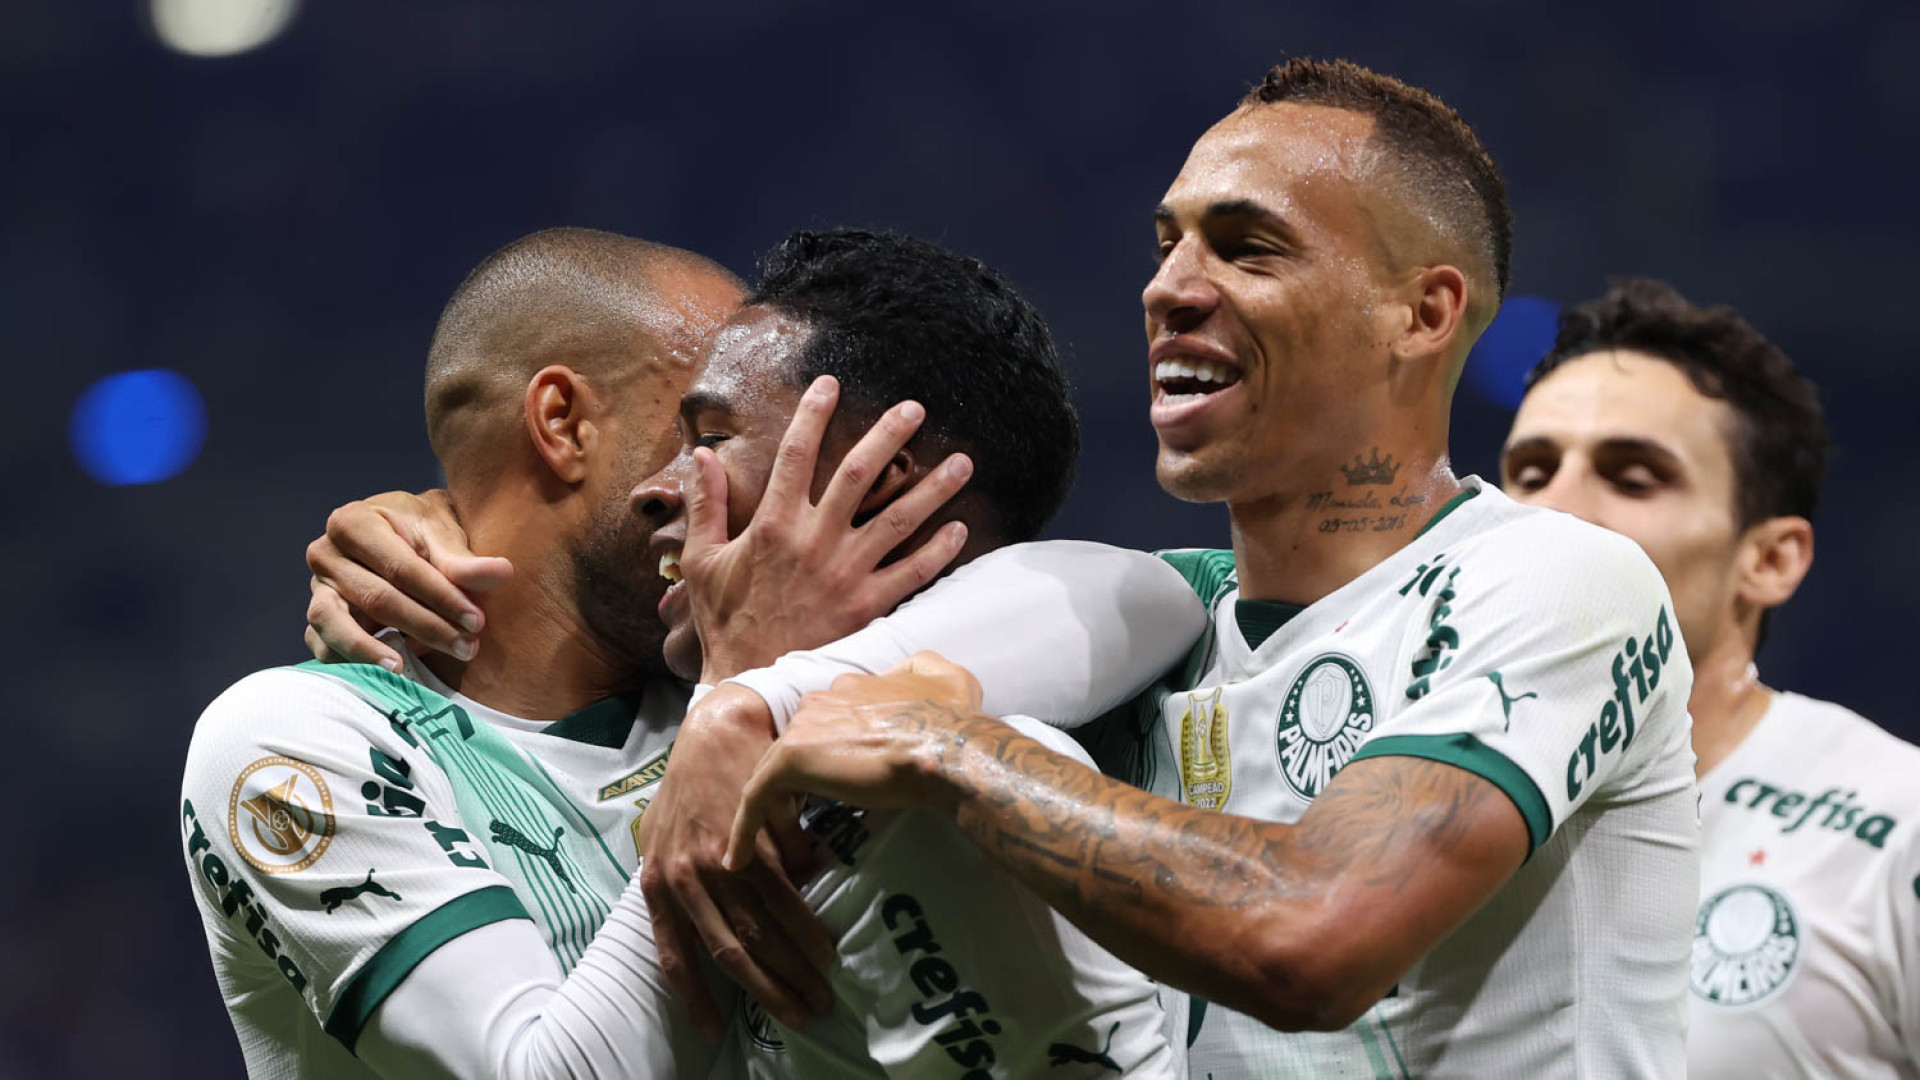 Empate com Cruzeiro coroa Palmeiras como campeão brasileiro 2023 - Notícias  Política Salvador Empreendedorismo Sustentabilidade ESG Bahia